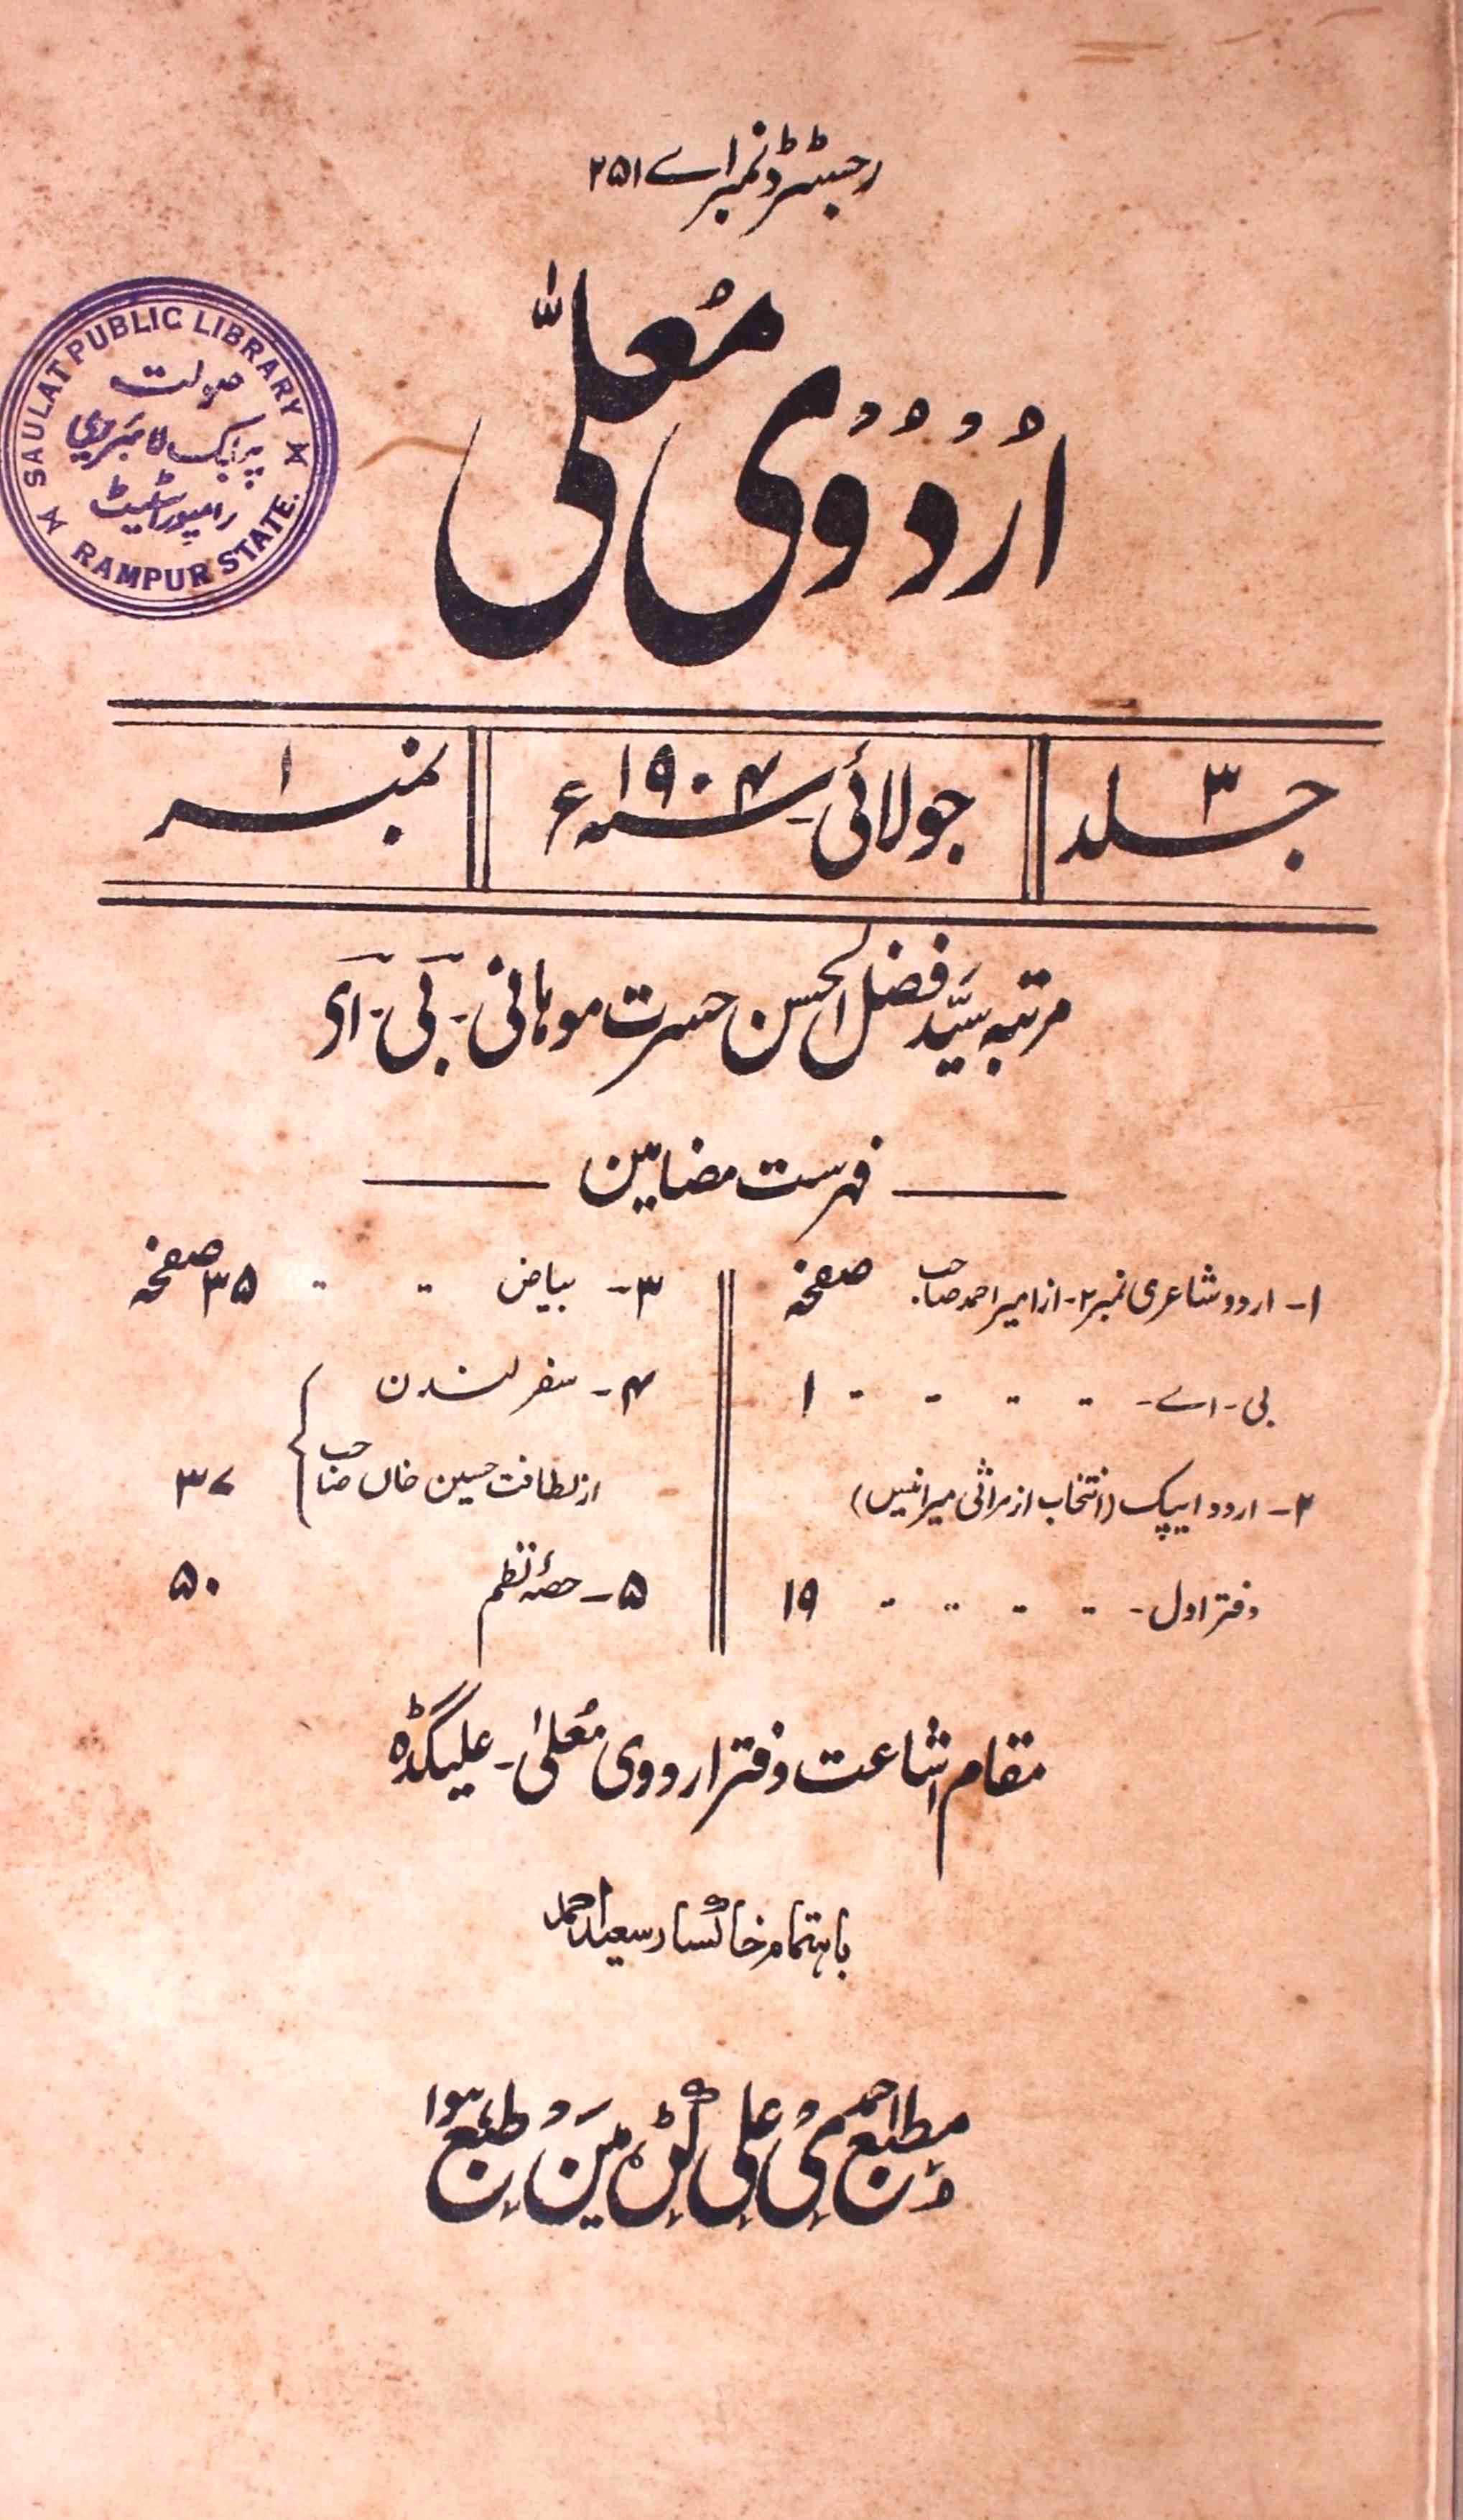 Urdu-e-Mualla, Aligarh